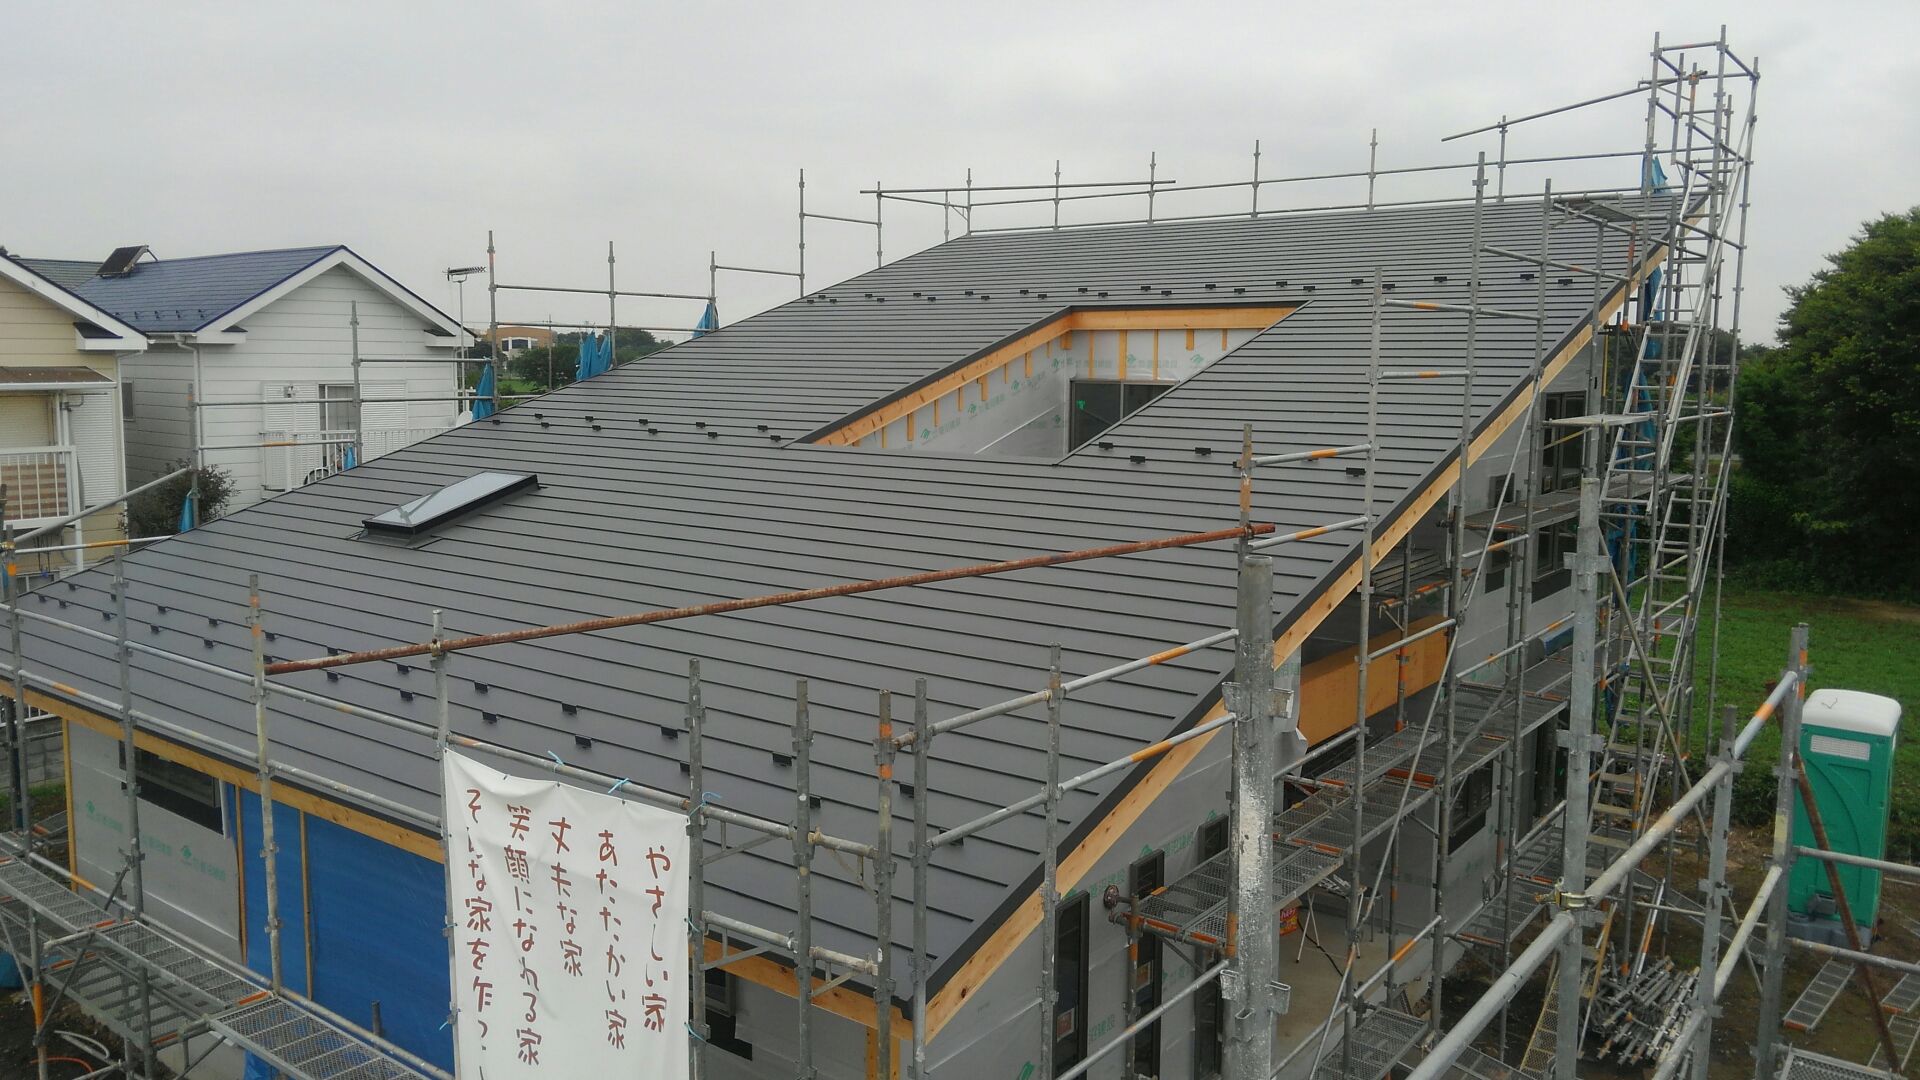 屋根工事の完成です。大迫力の大屋根、ステキな仕上がりになりました。